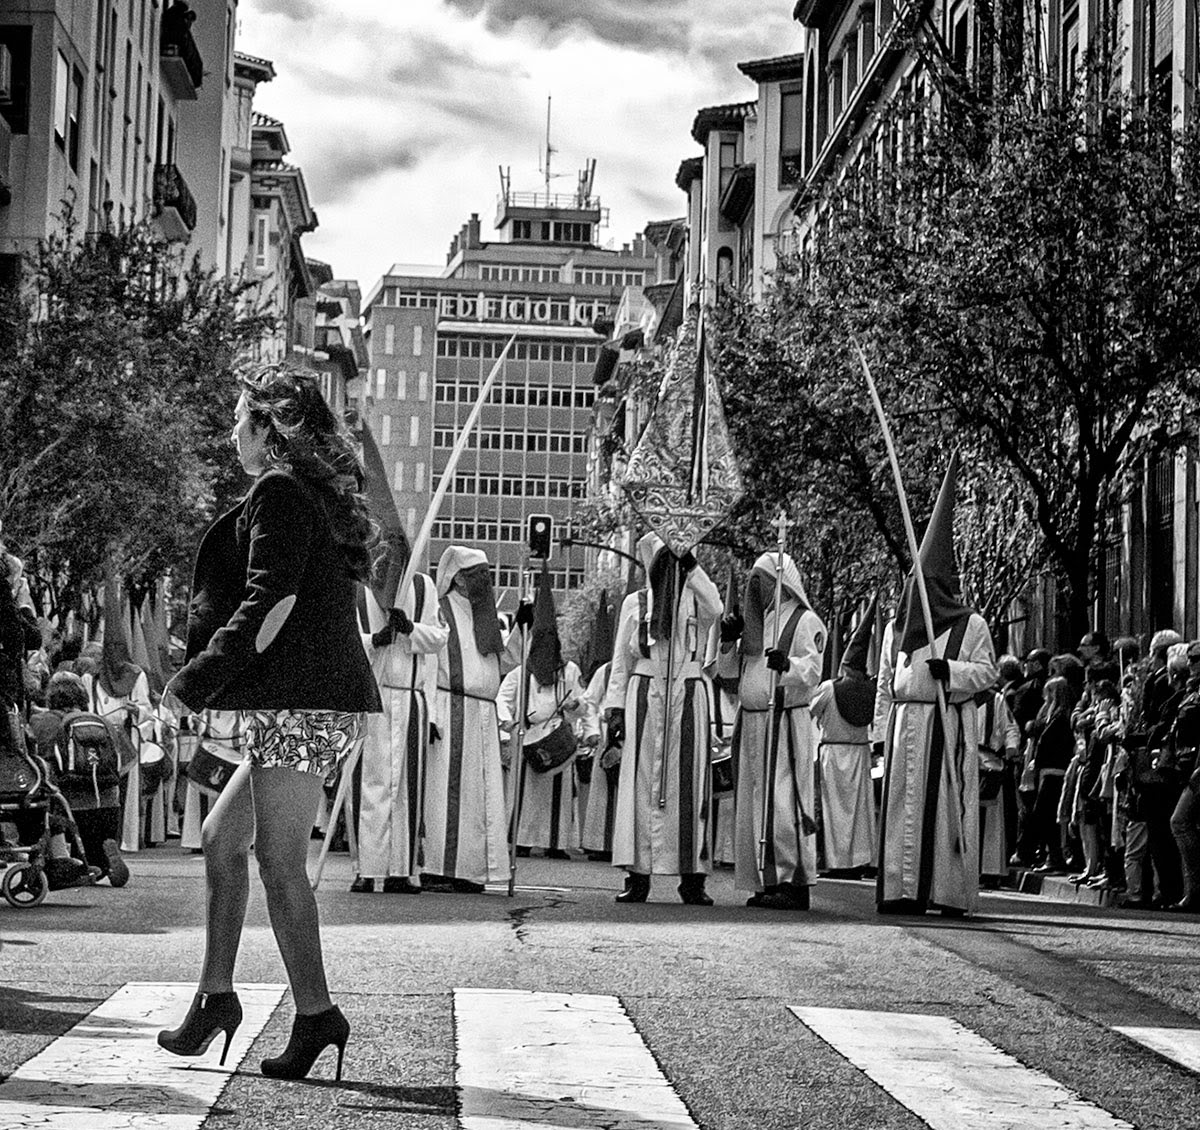 Semana Santa Zaragoza 2015 - Holy Week Spain - Street Photo B&N